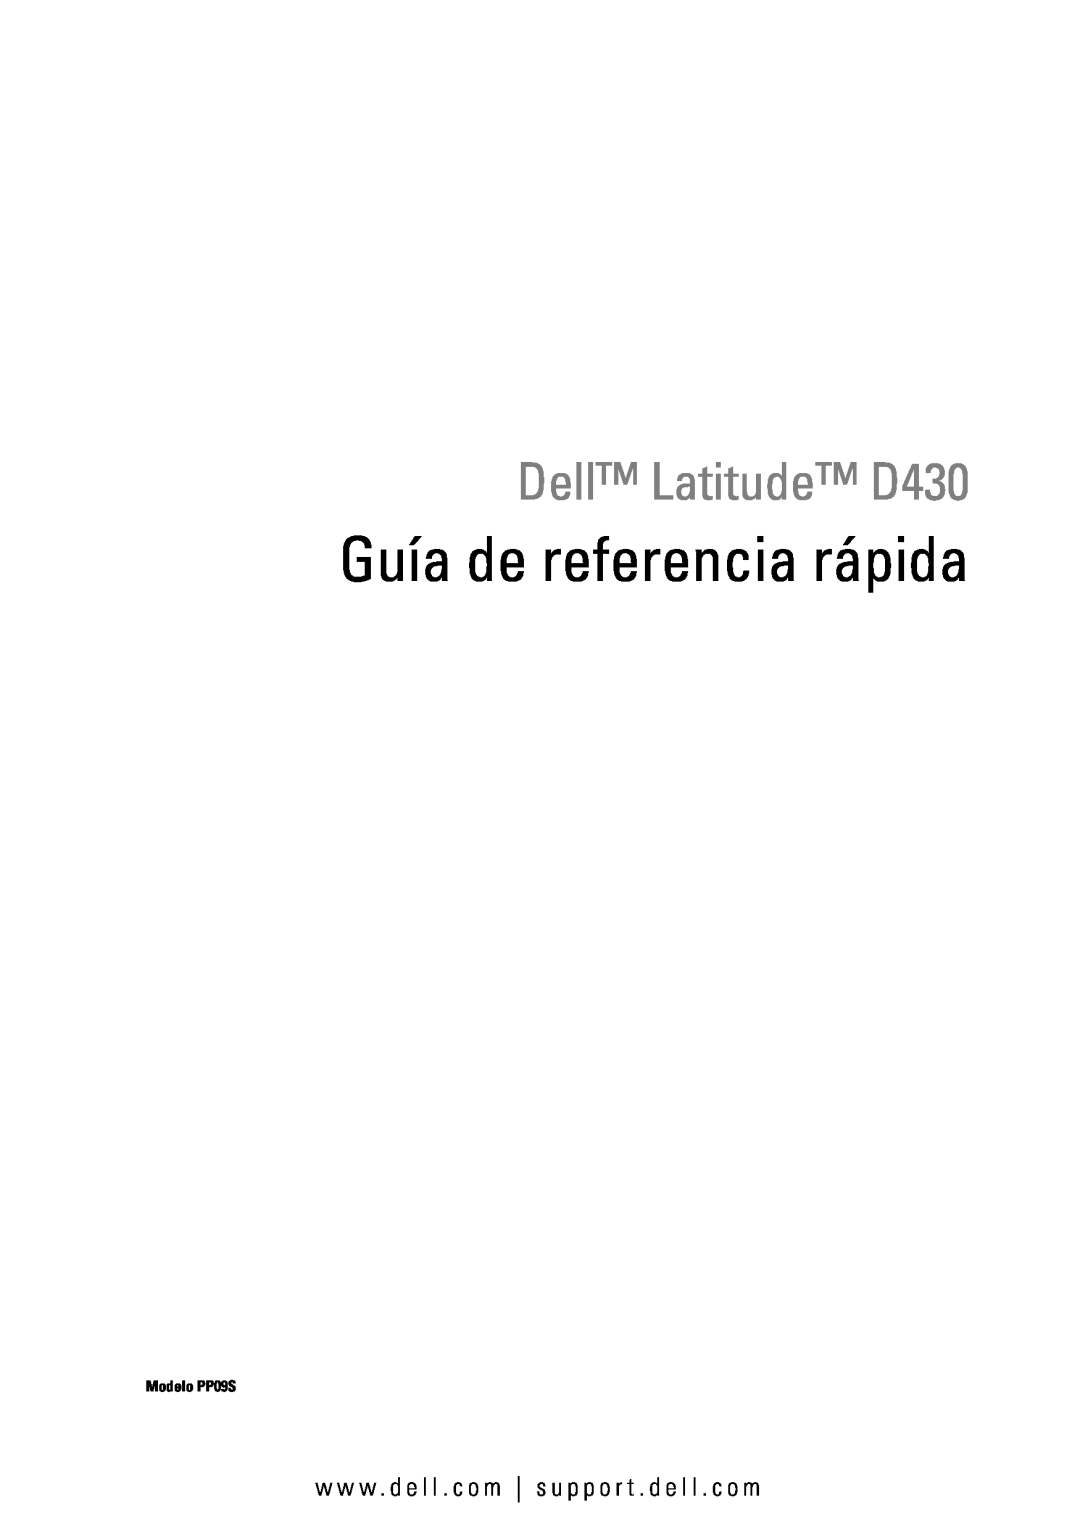 Dell manual Guía de referencia rápida, Dell Latitude D430, w w w . d e l l . c o m s u p p o r t . d e l l . c o m 